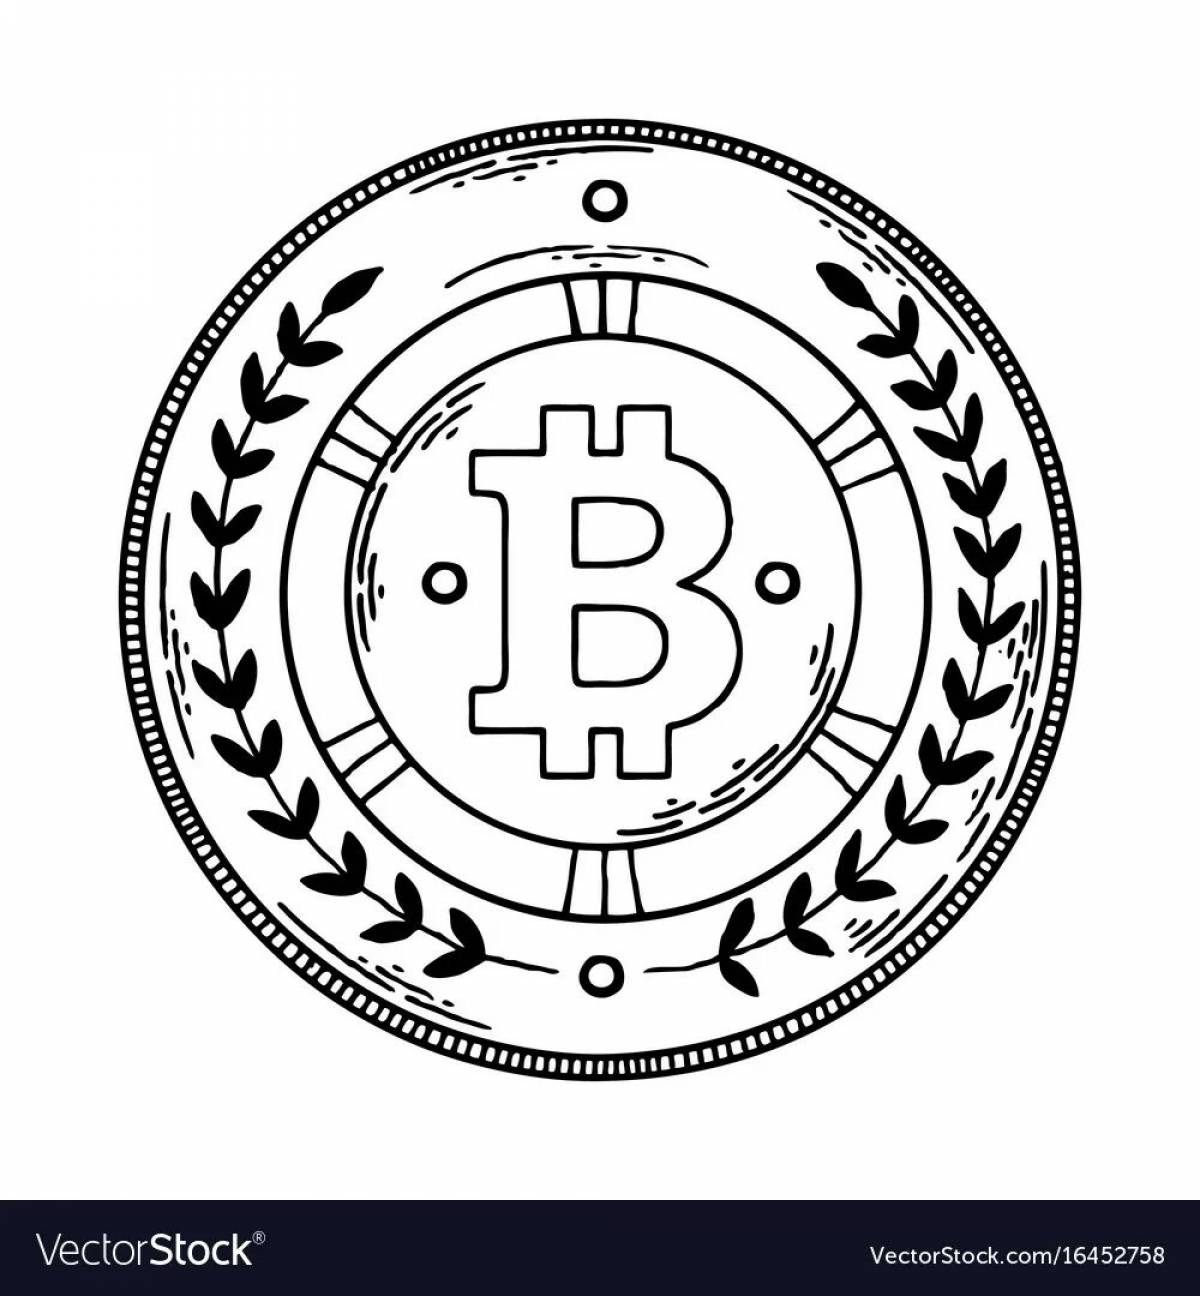 Bitcoin #21